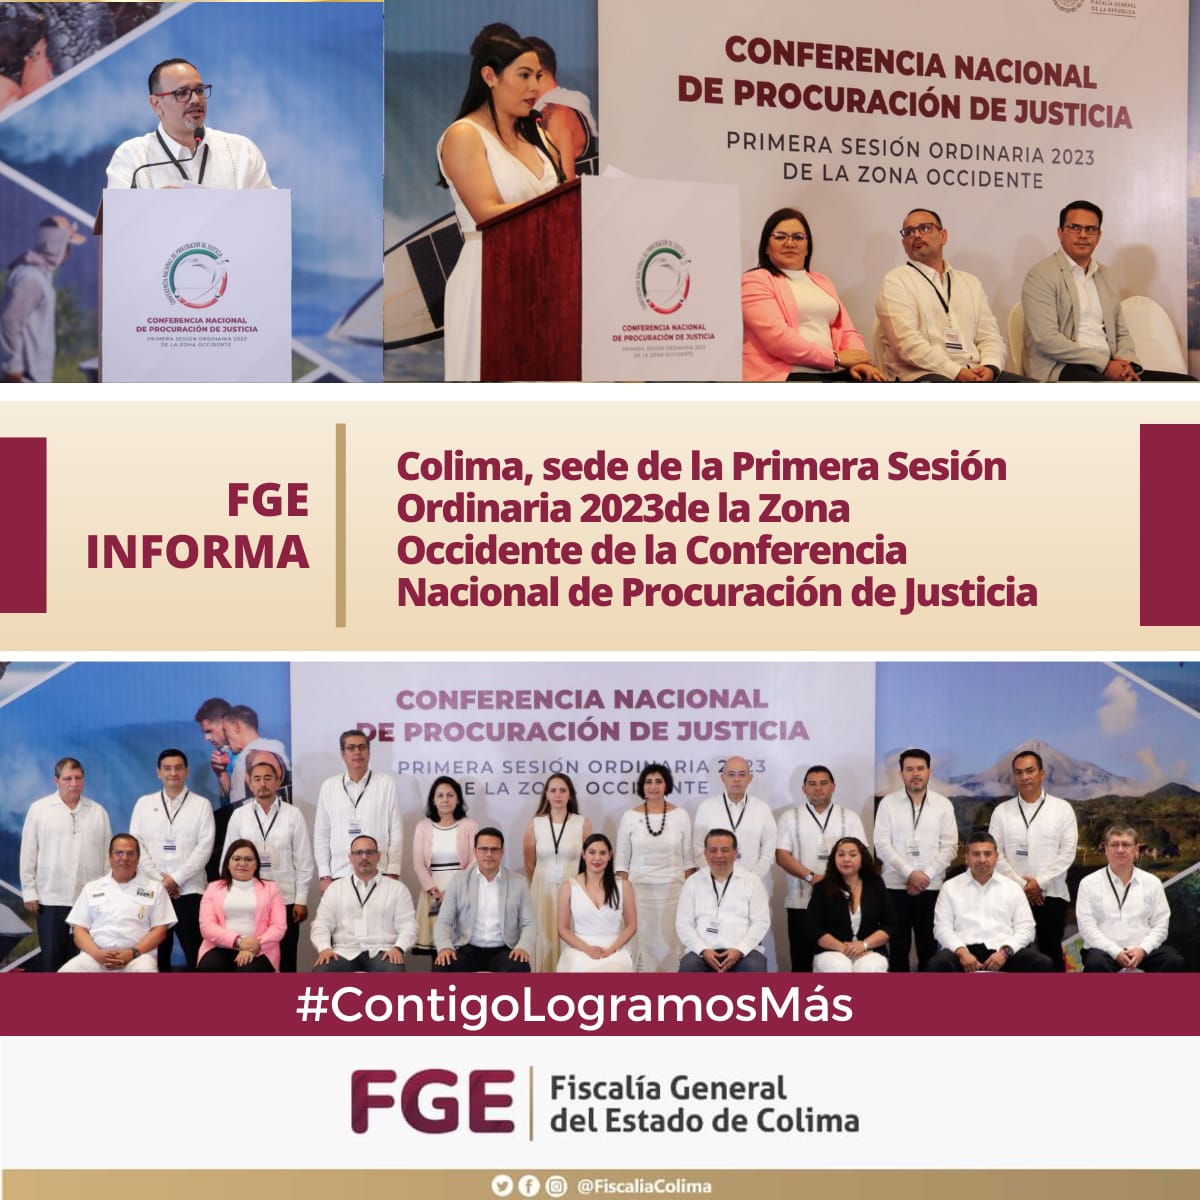 Colima, sede de la Primera Sesión Ordinaria 2023de la Zona Occidente de la Conferencia Nacional de Procuración de Justicia